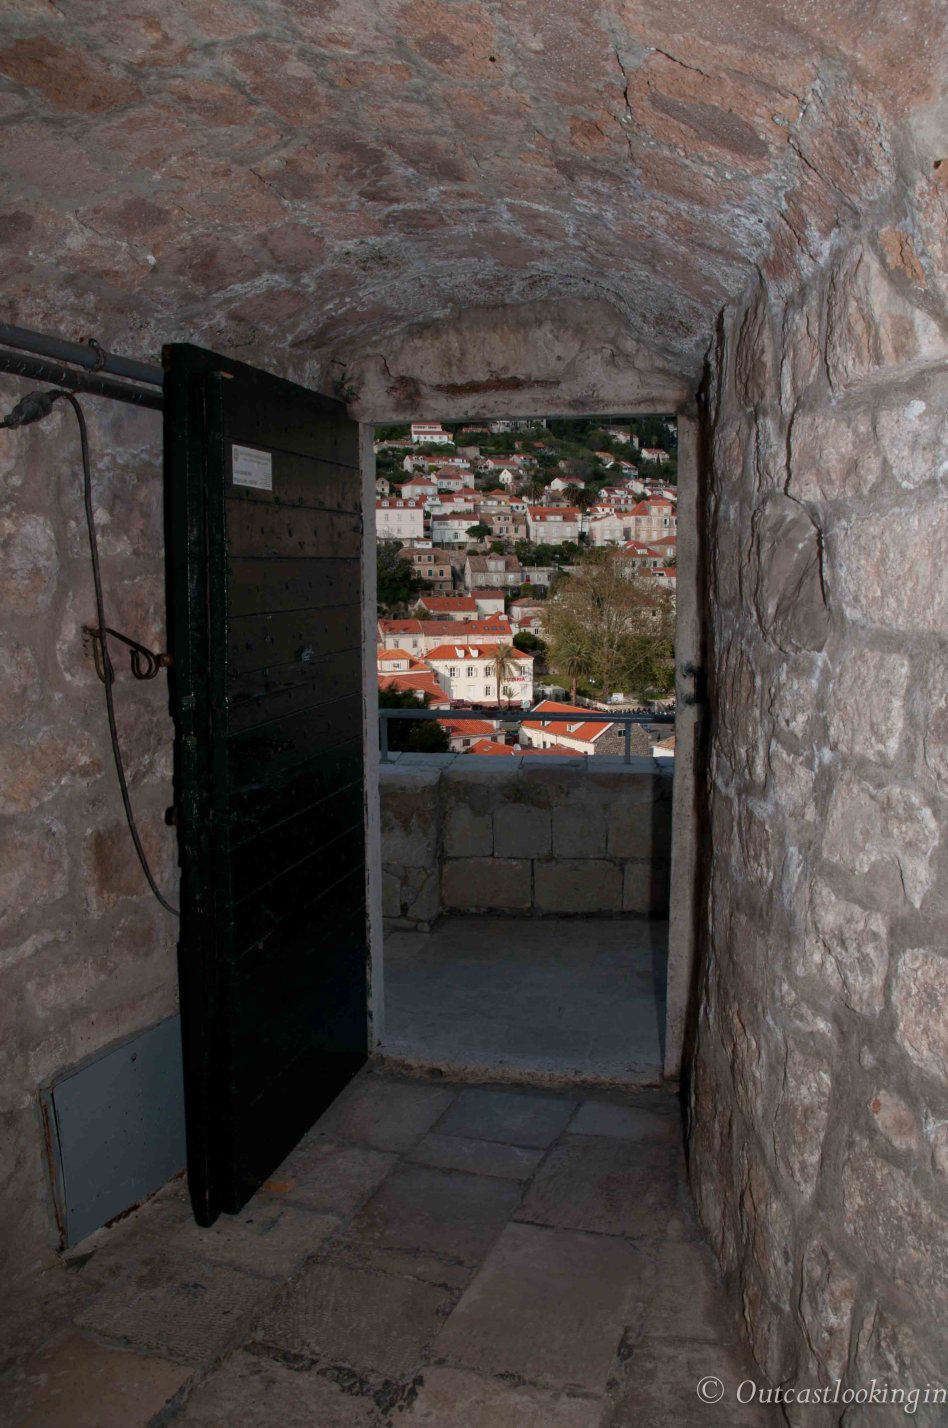 View of Dubrovnik through an open door in the walls